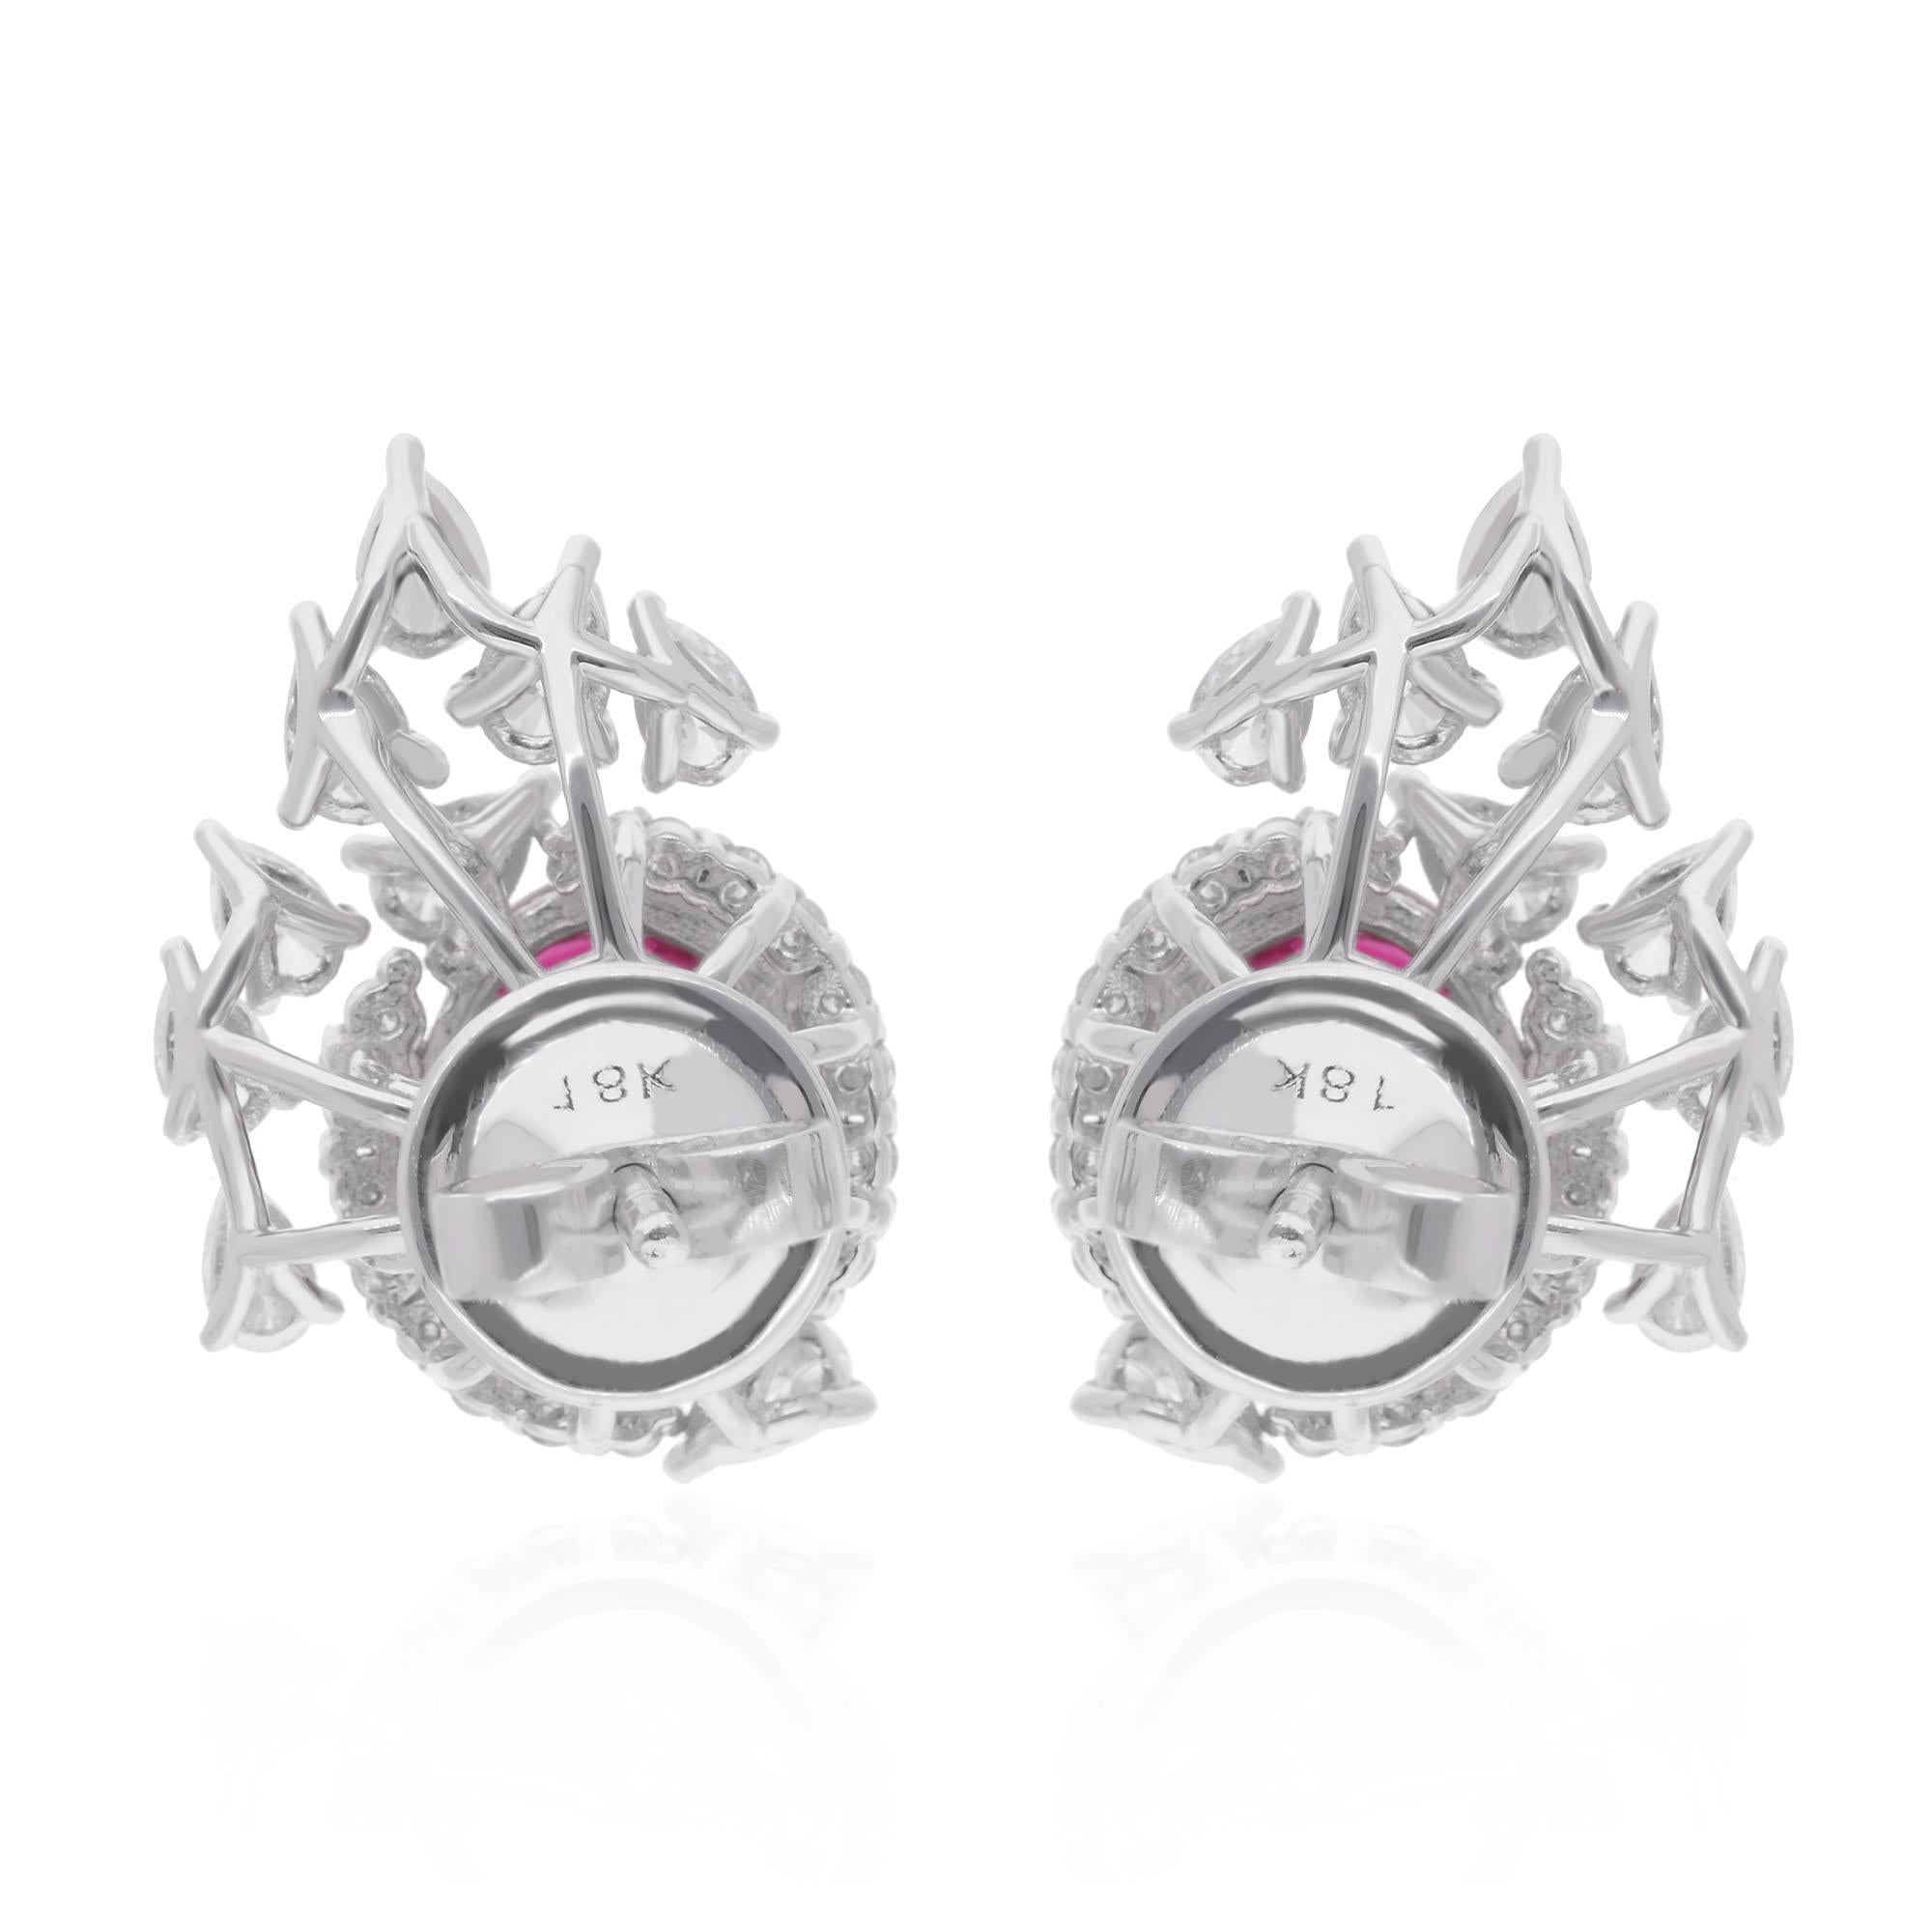 Women's Oval Ruby Gemstone Stud Earrings Diamond 18 Karat White Gold Handmade Jewelry For Sale